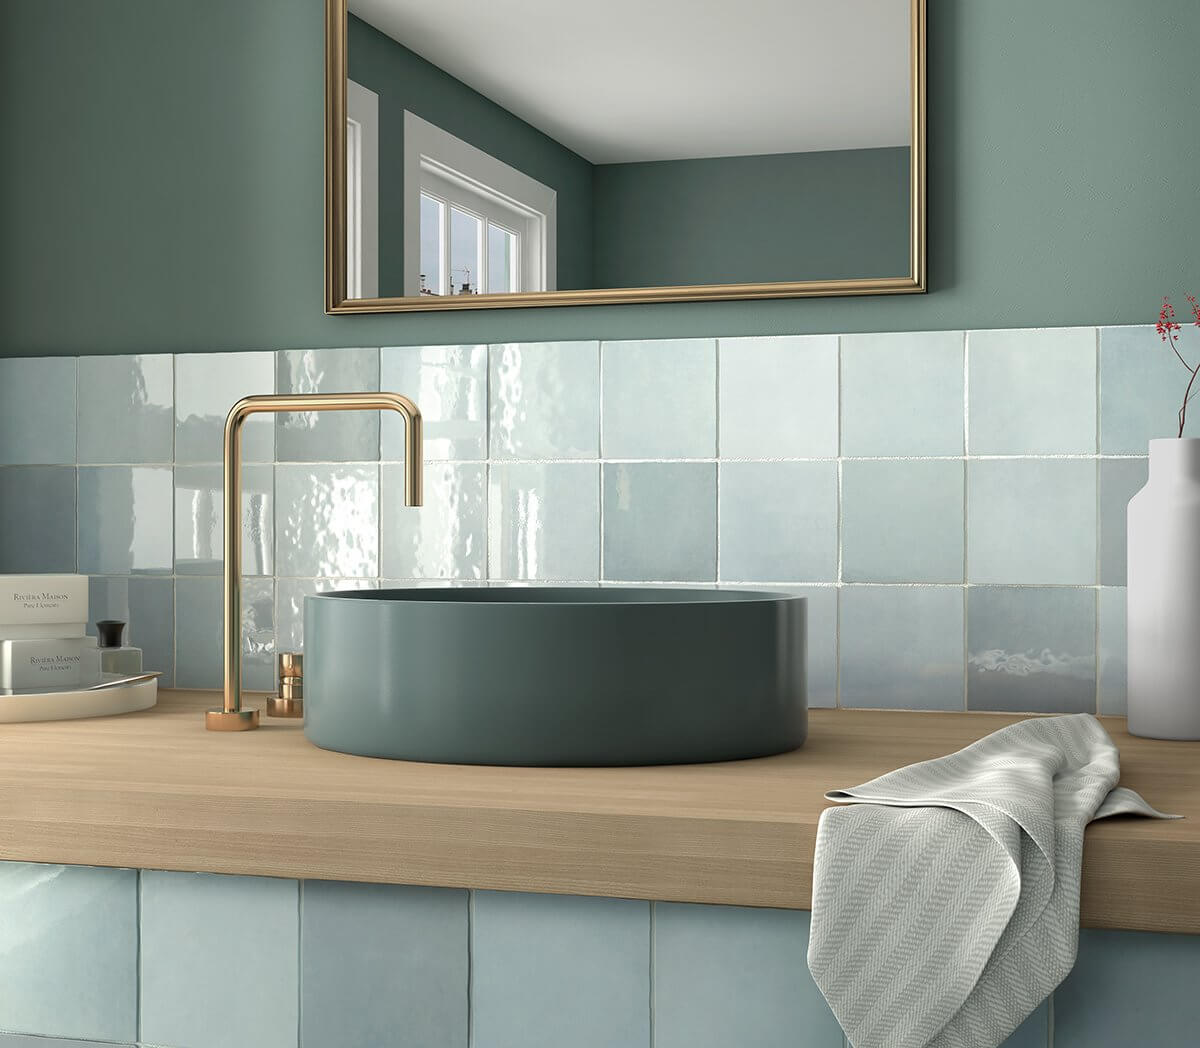 Pintar los azulejos del baño merece mucho la pena: ¡descubre por qué y cómo hacerlo!